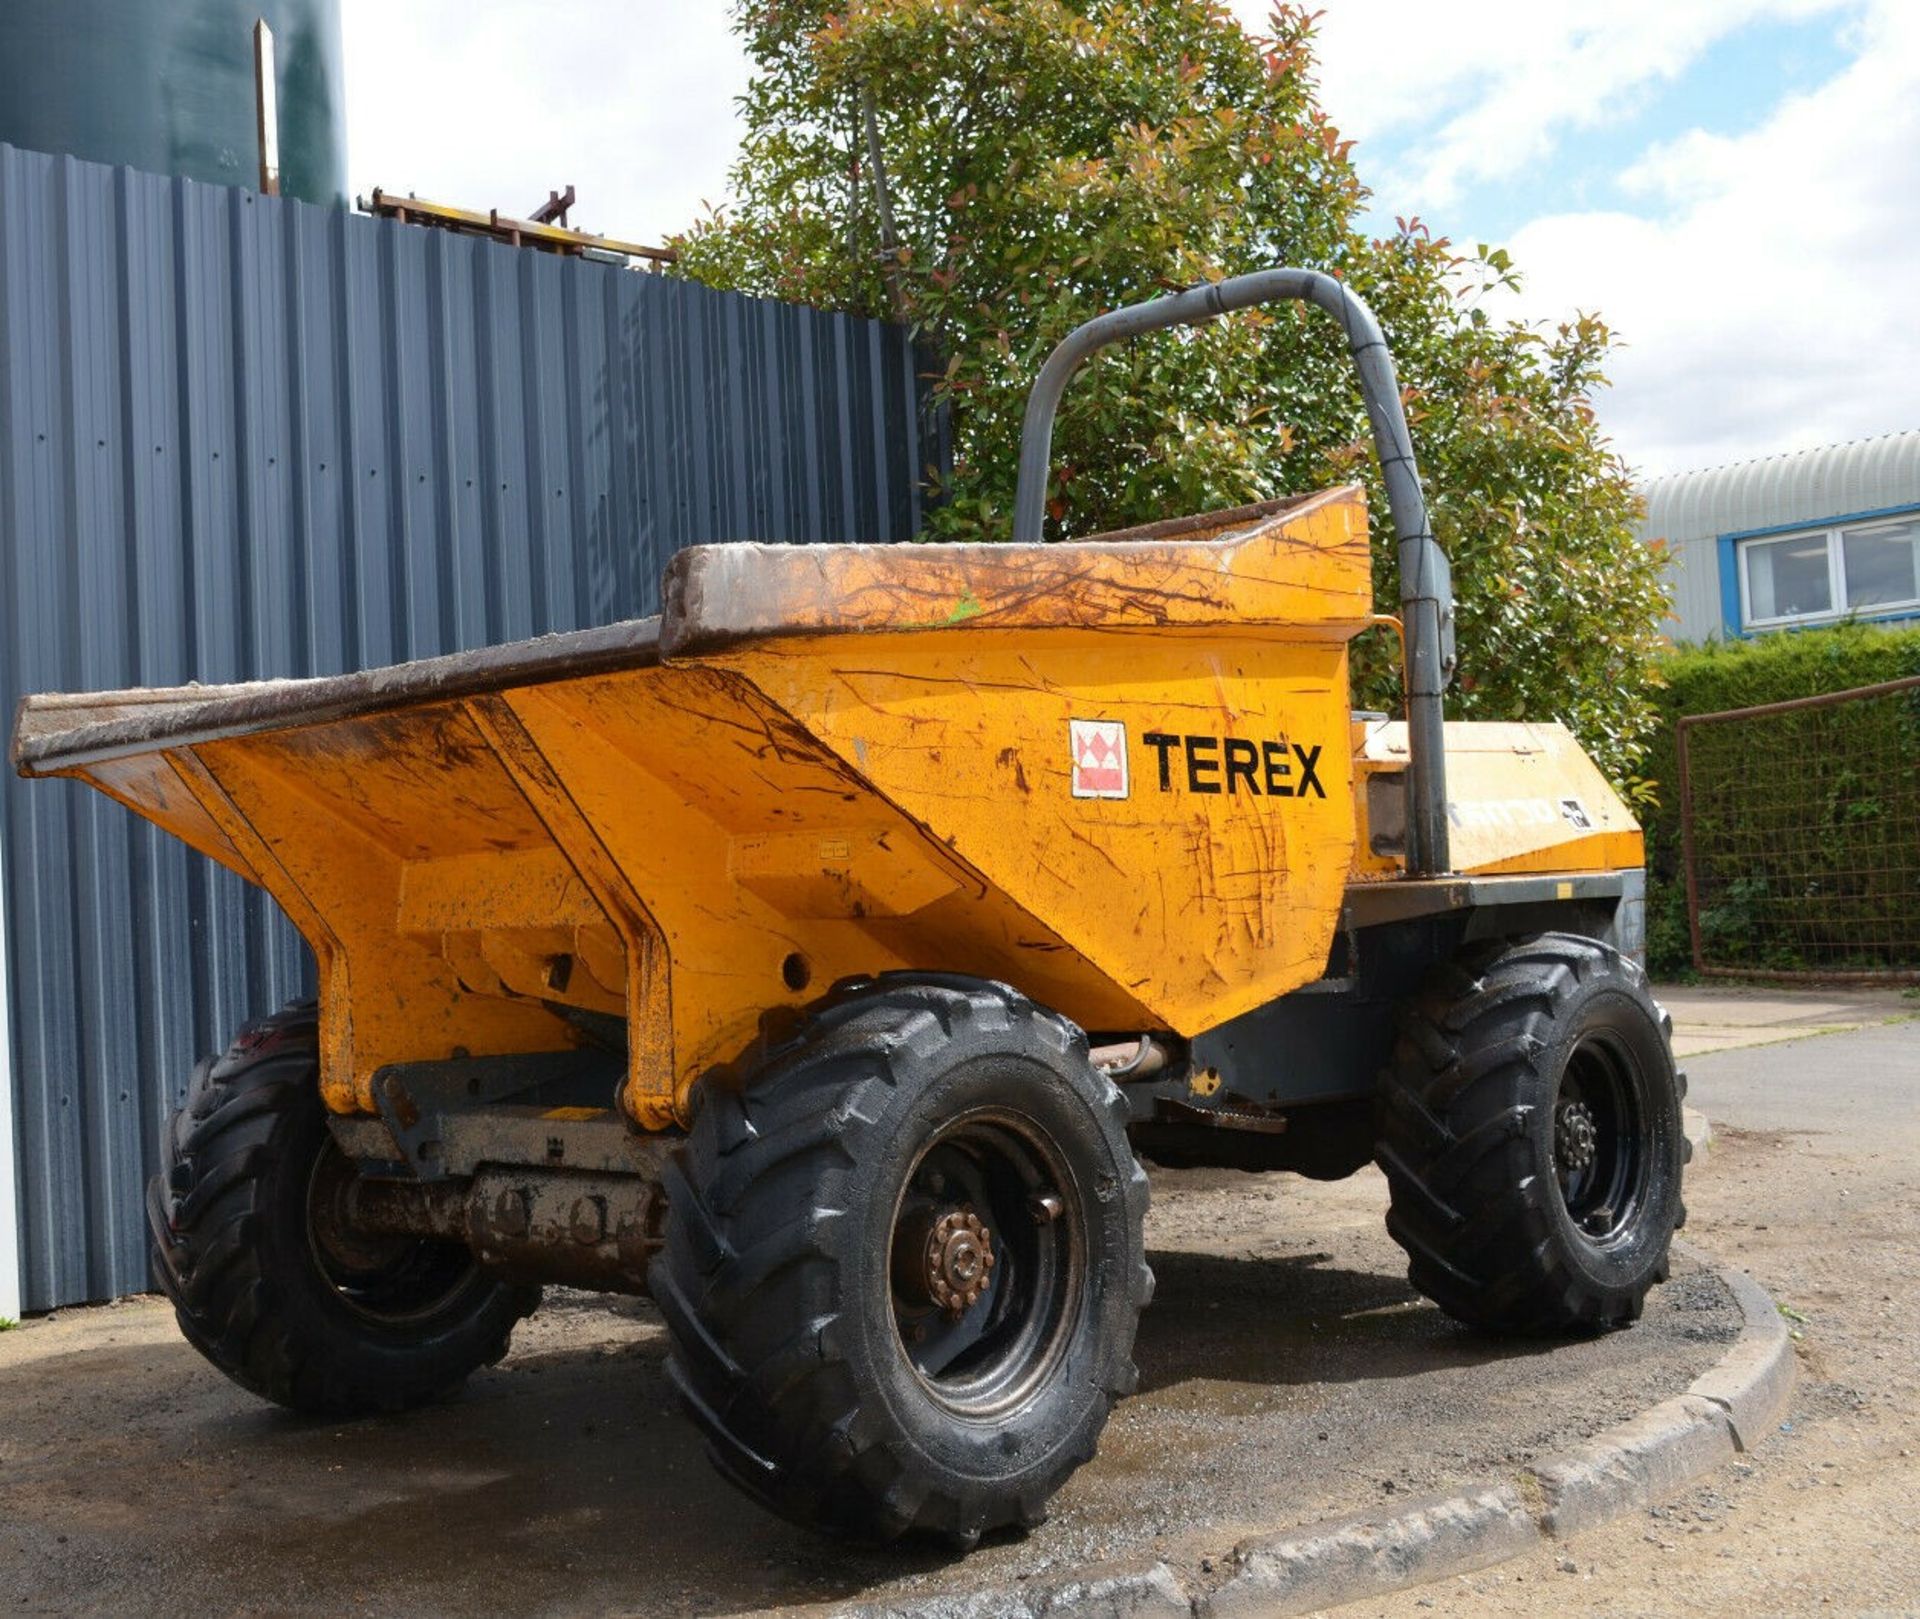 Terex Benford PT6000 Dumper 2007 - Image 3 of 12